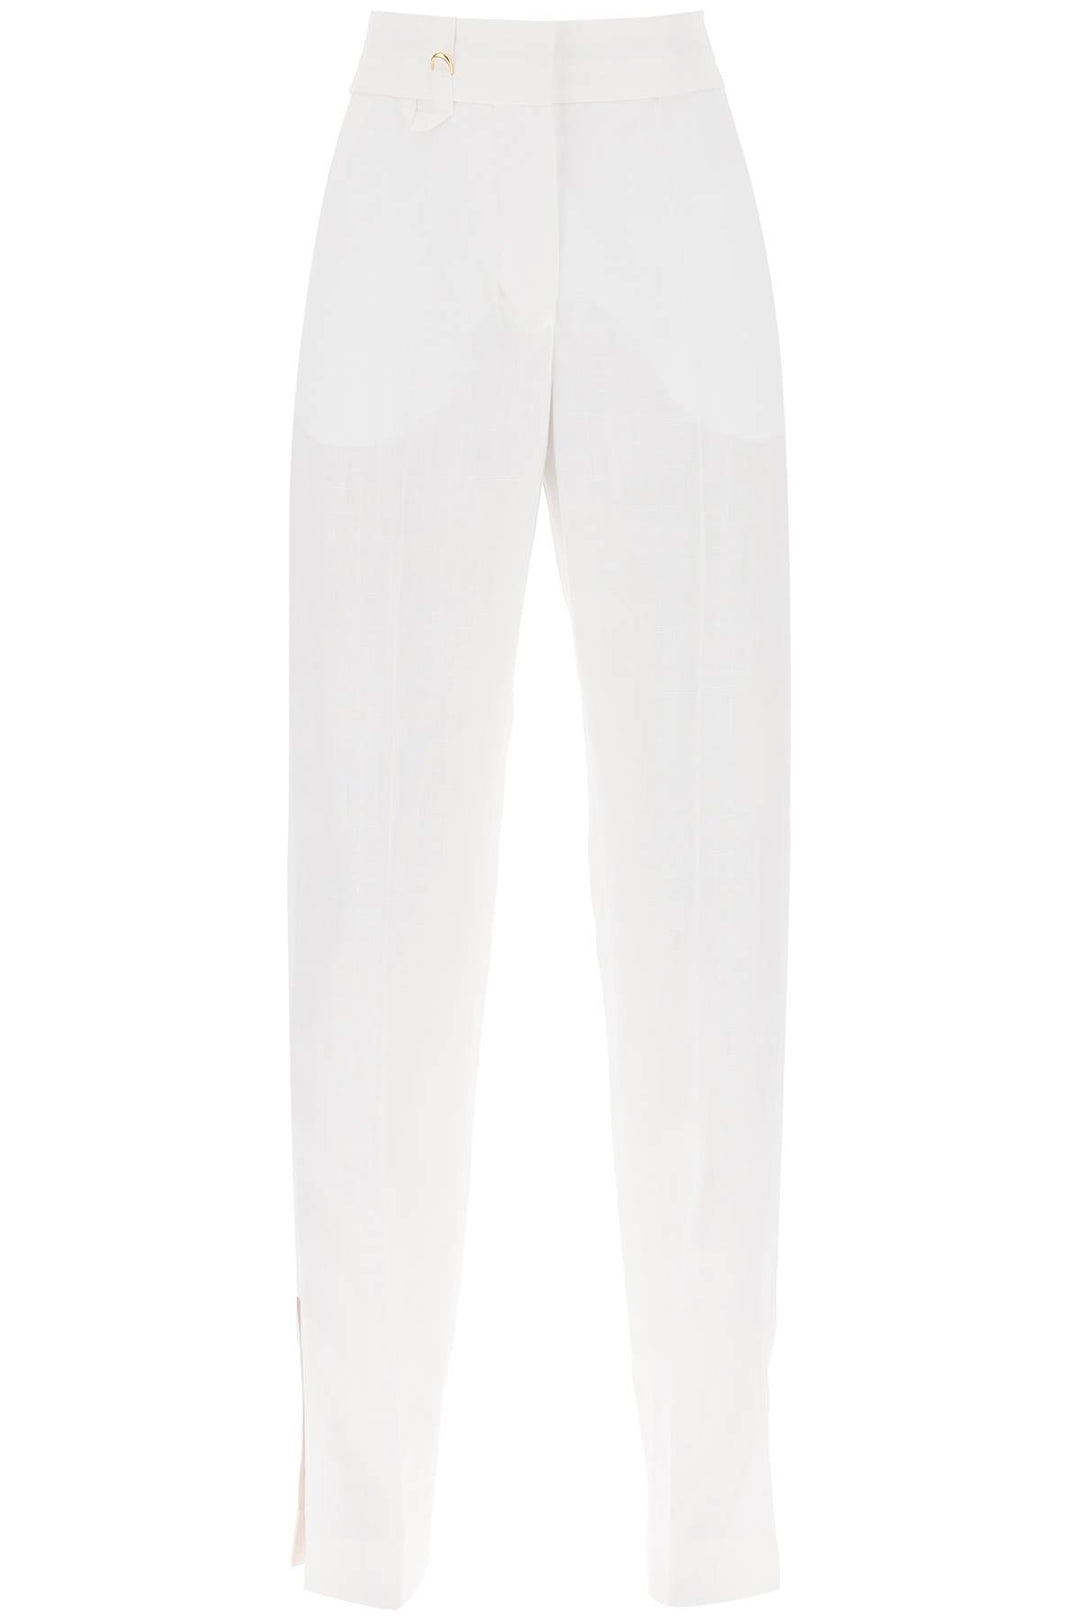 Jacquemus 'Le Pantalon Tibau' Slit Pants   Bianco